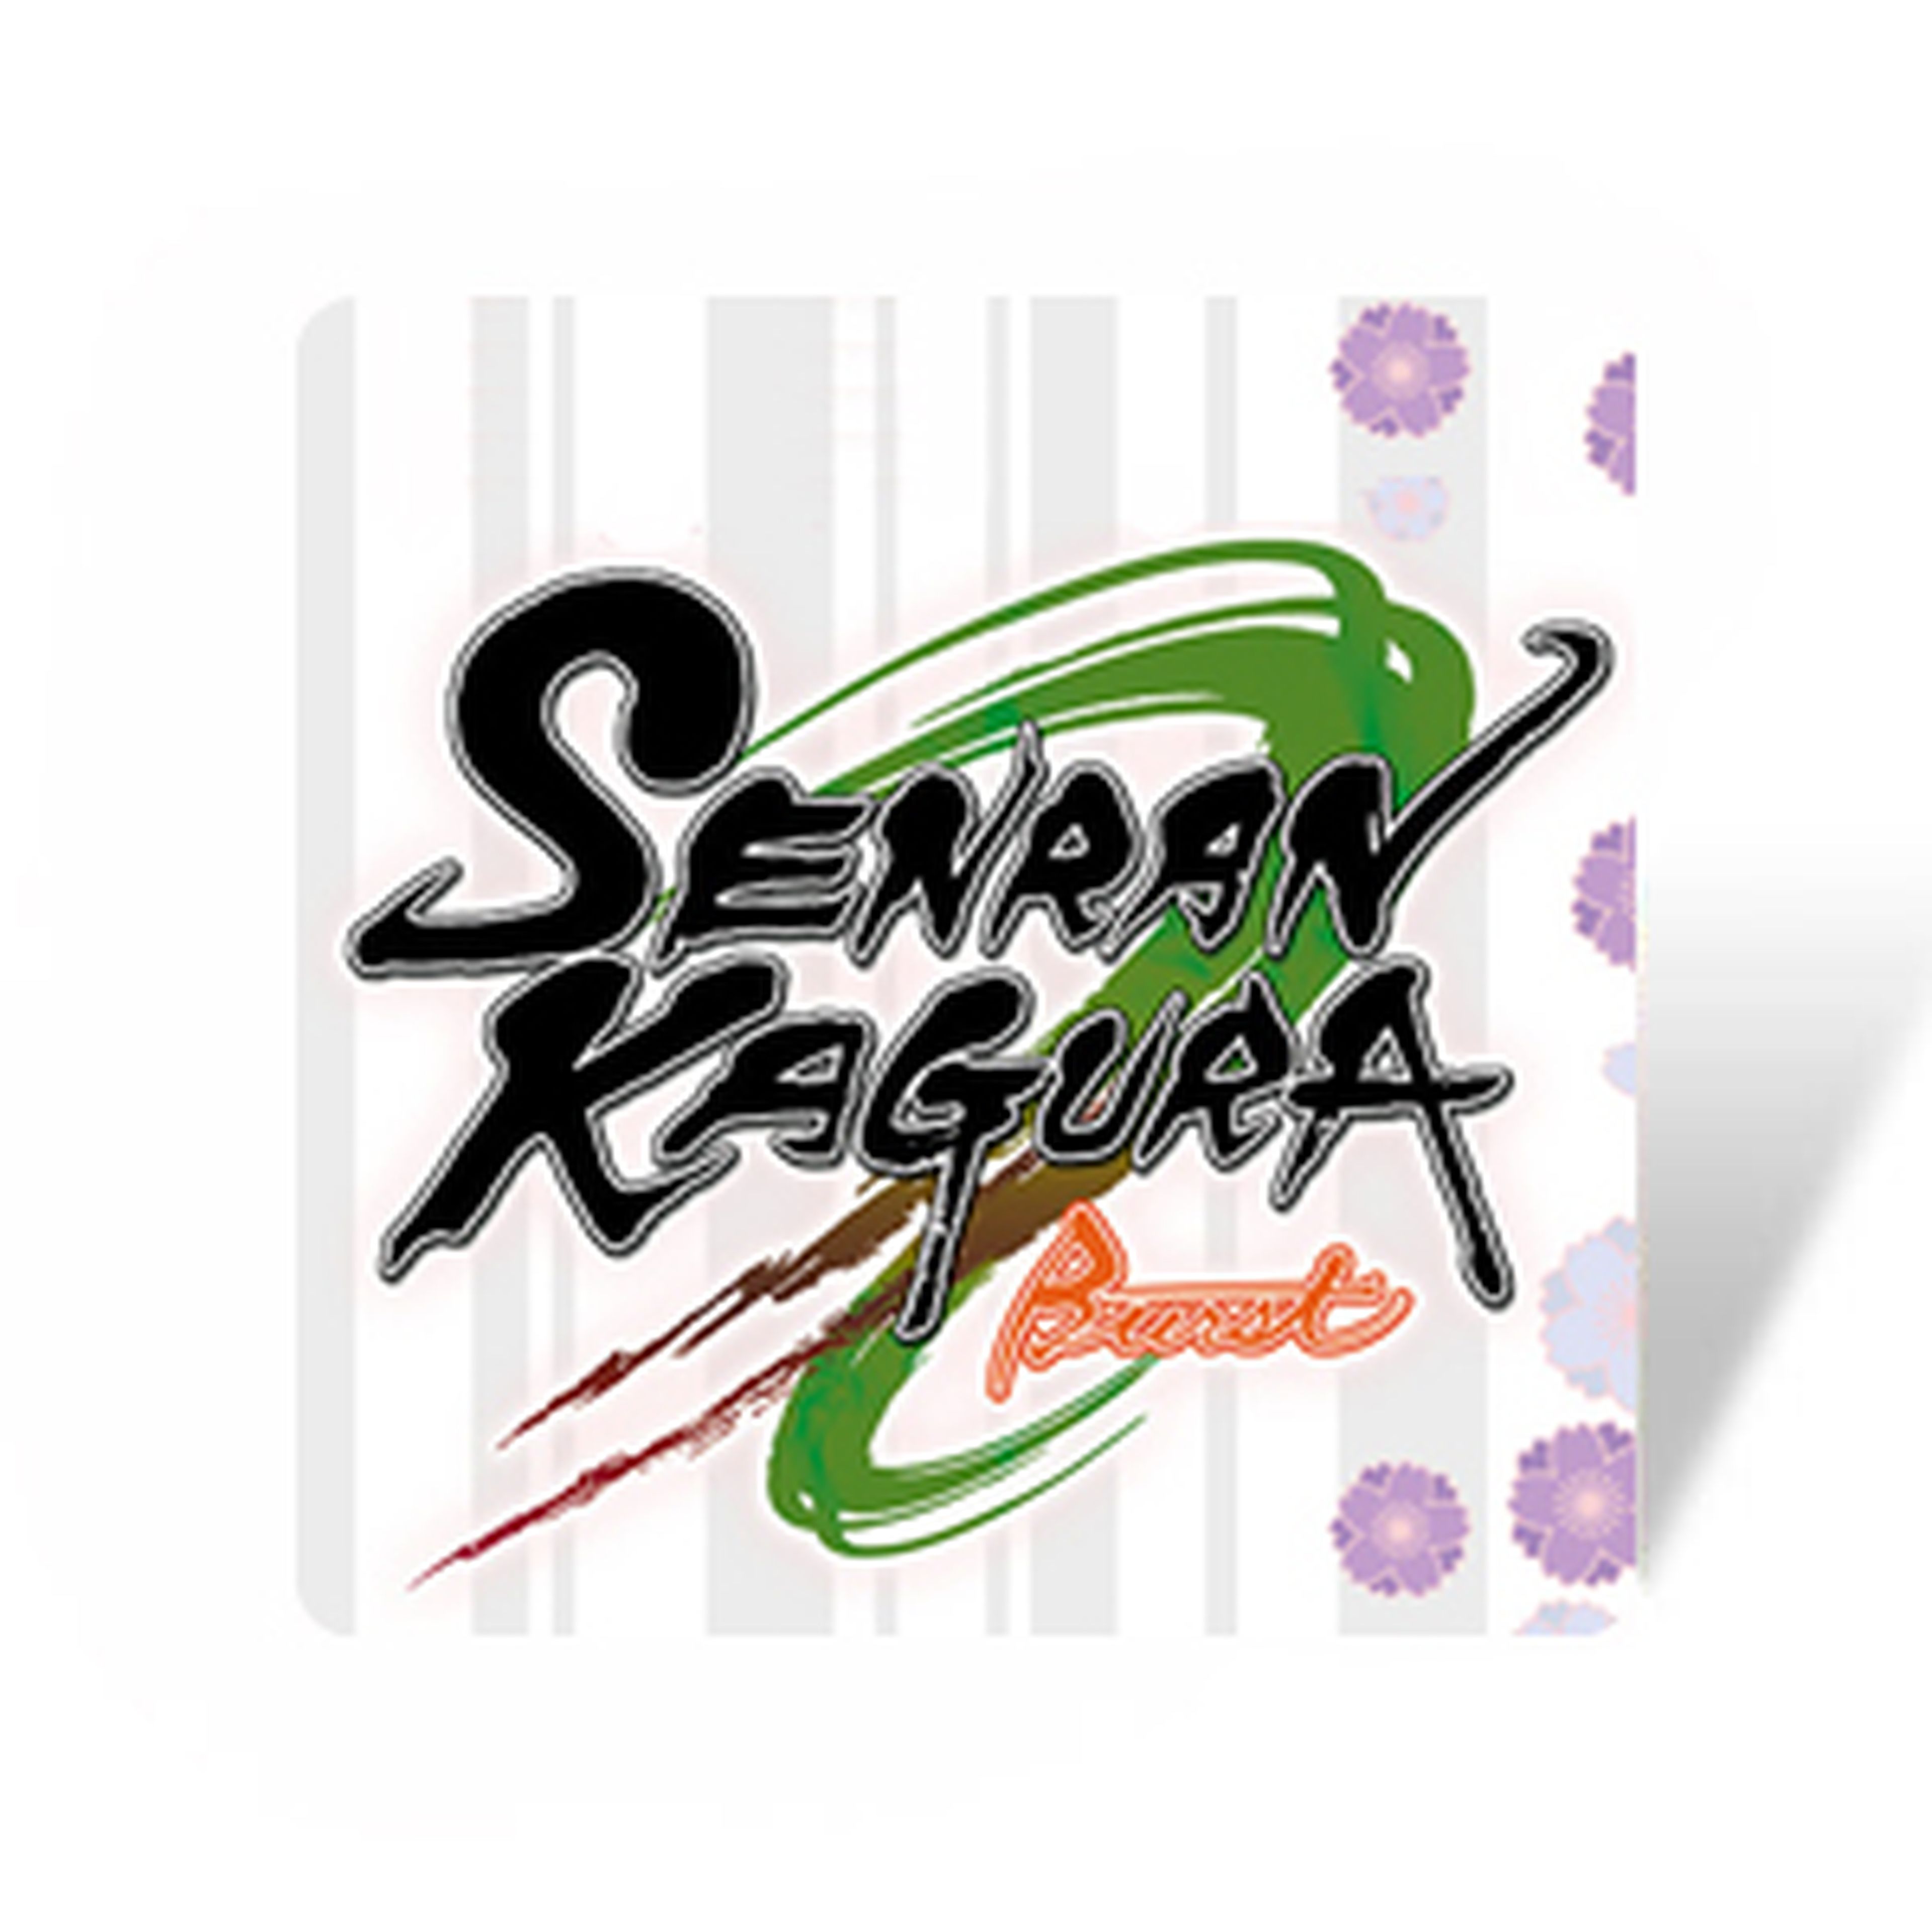 Senran Kagura Burst para 3DS